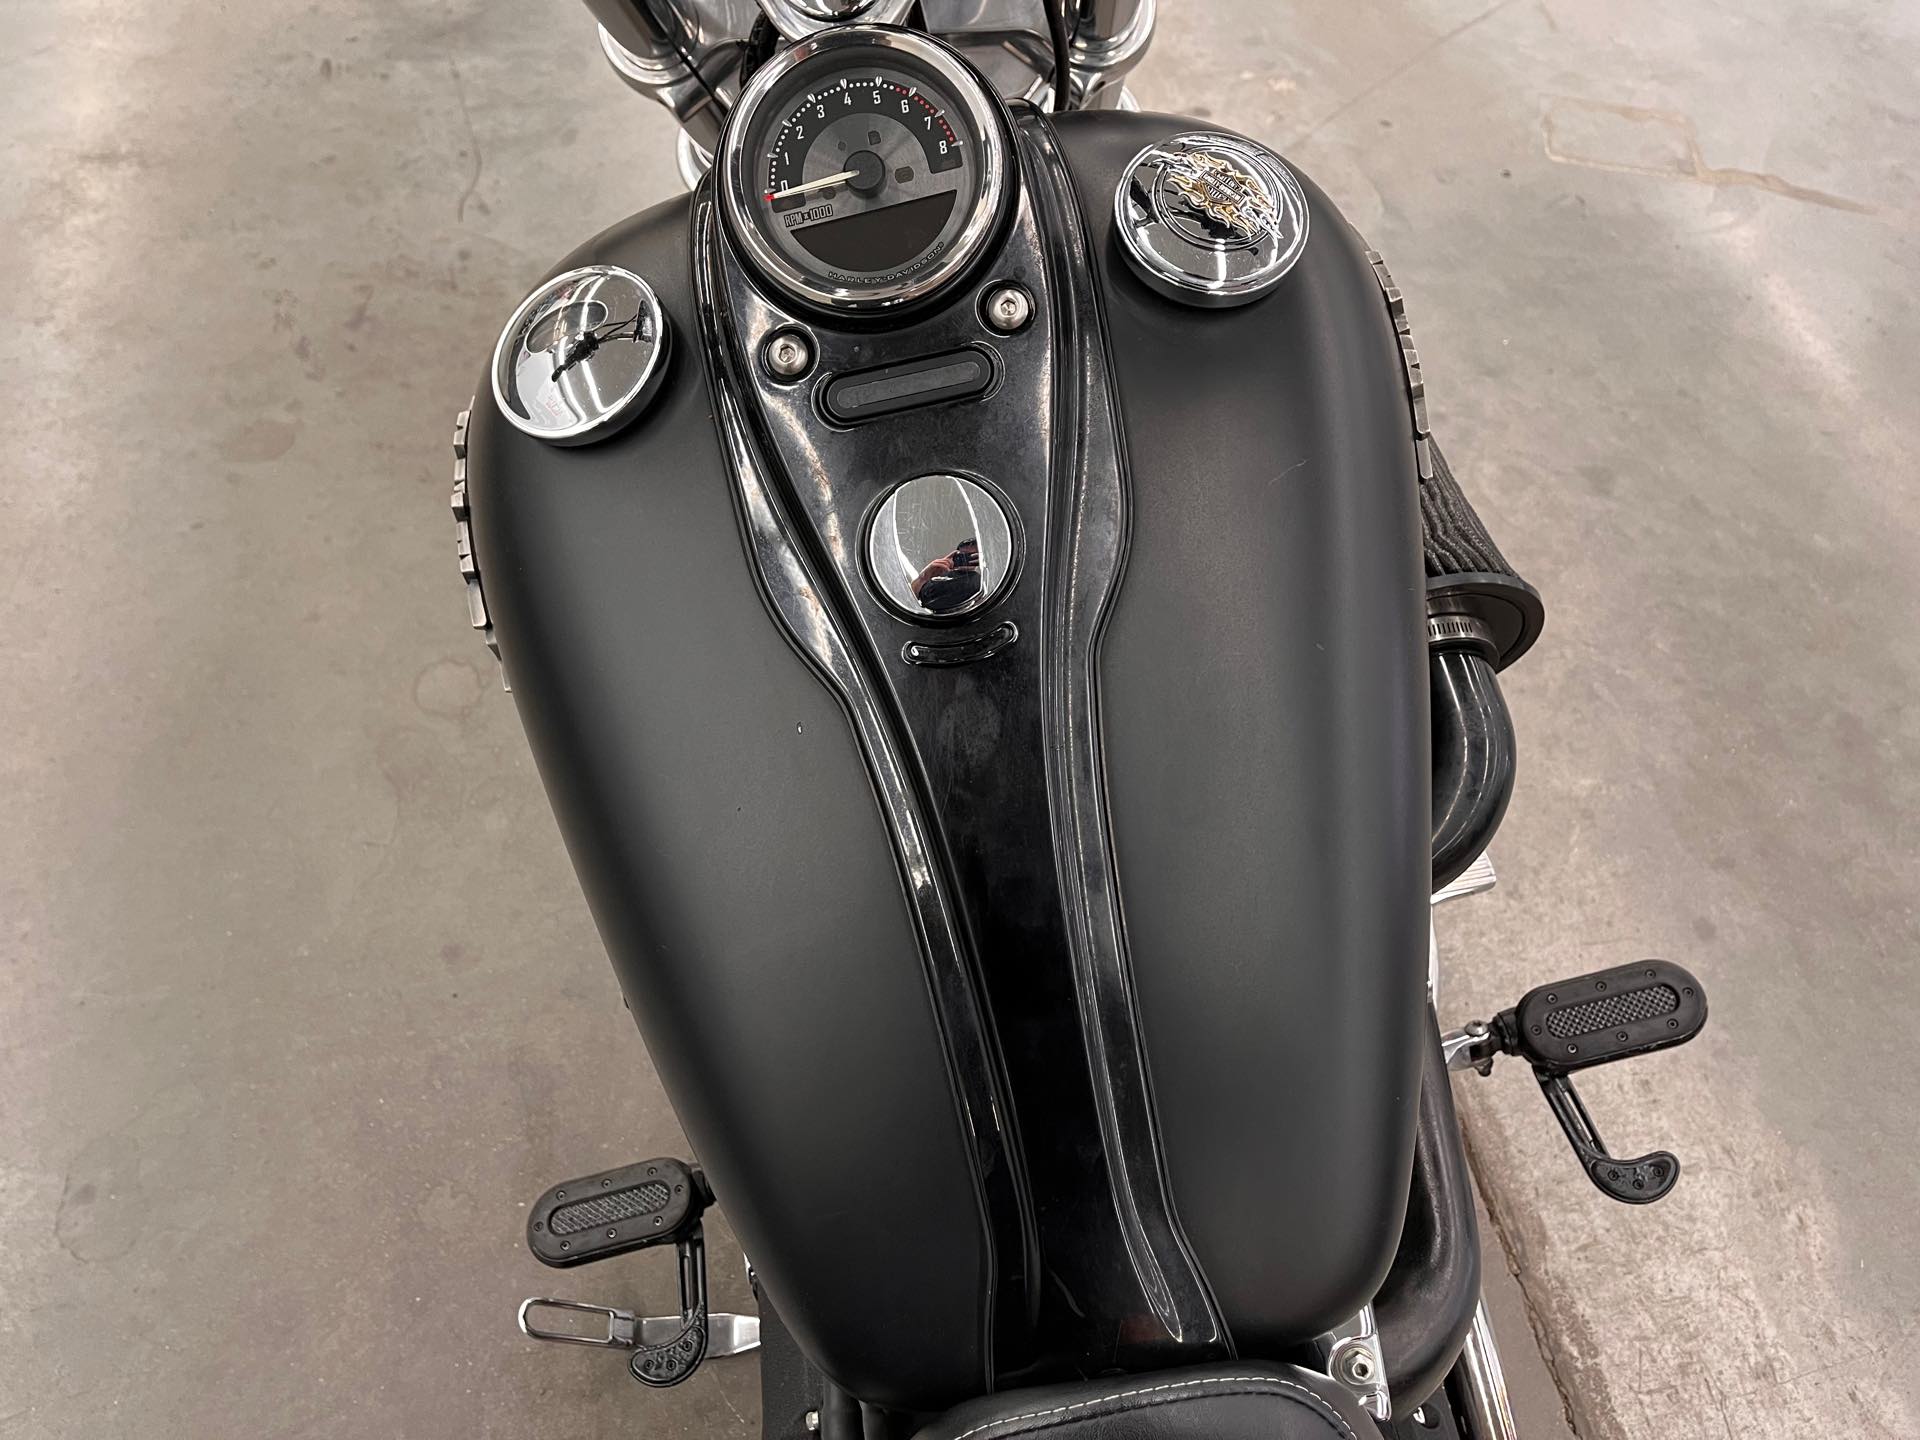 2012 Harley-Davidson Dyna Glide Wide Glide at Aces Motorcycles - Denver